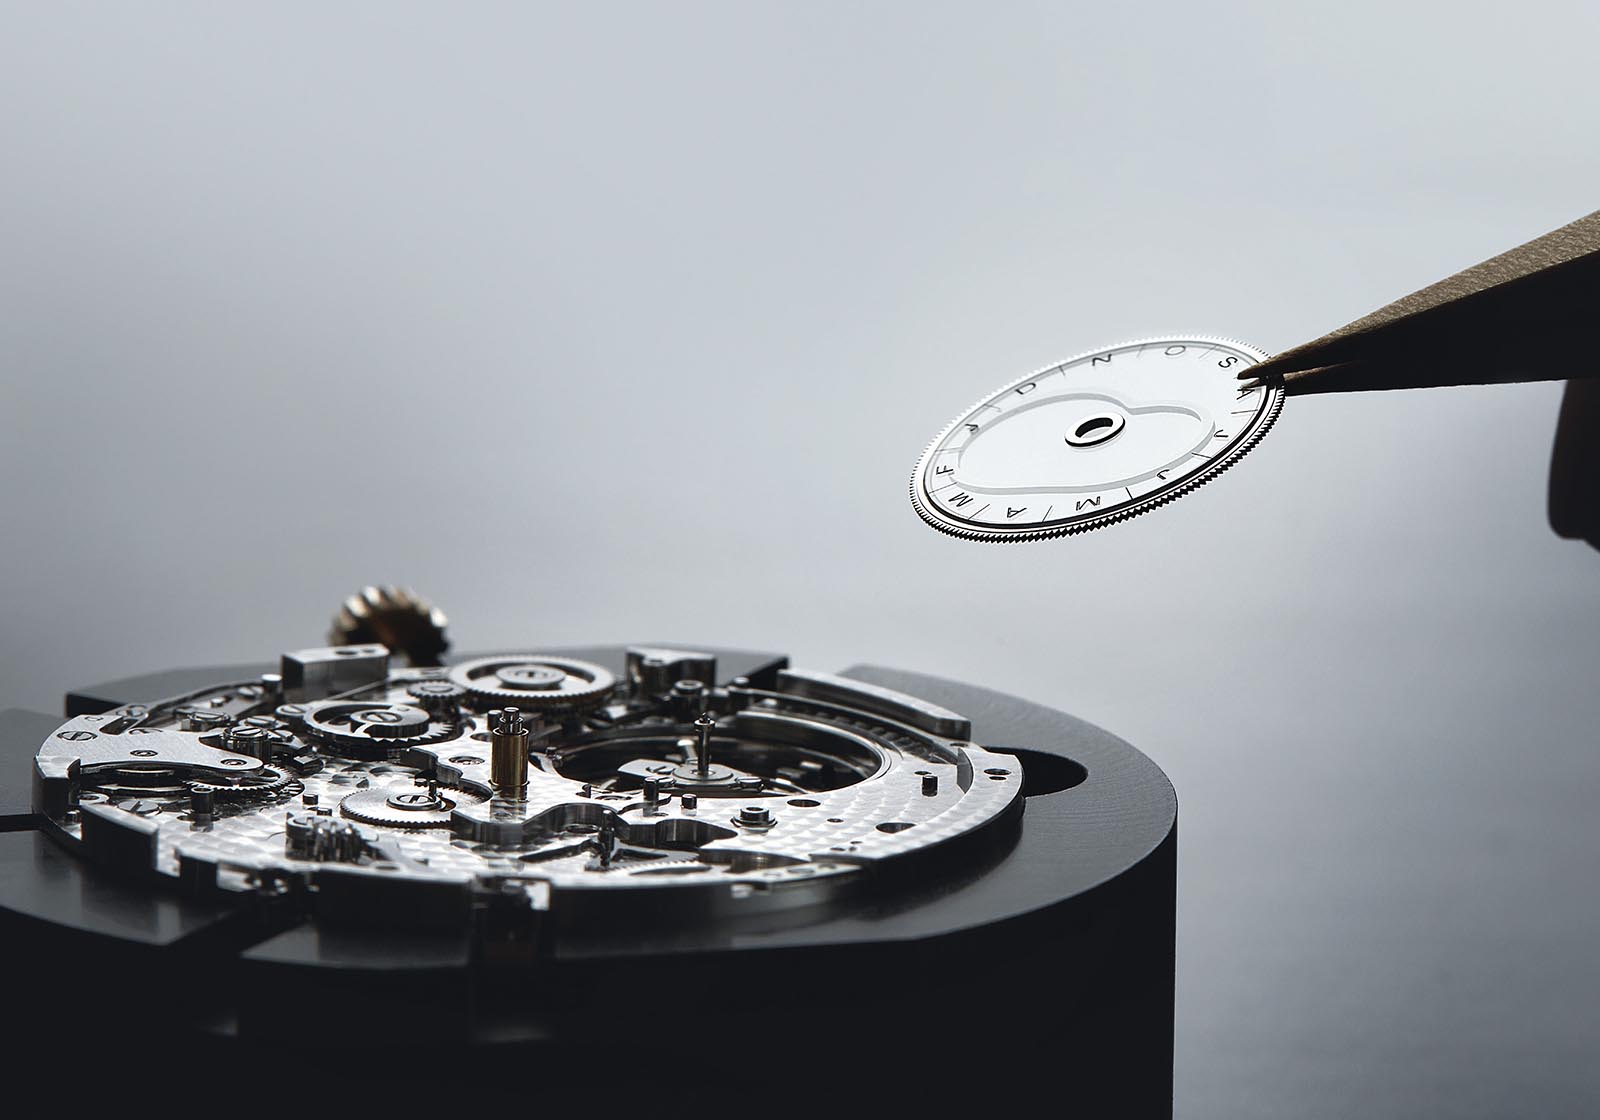 Cam hình quả thận gắn vào đĩa sapphire của đồng hồ phương trình thời gian Breguet